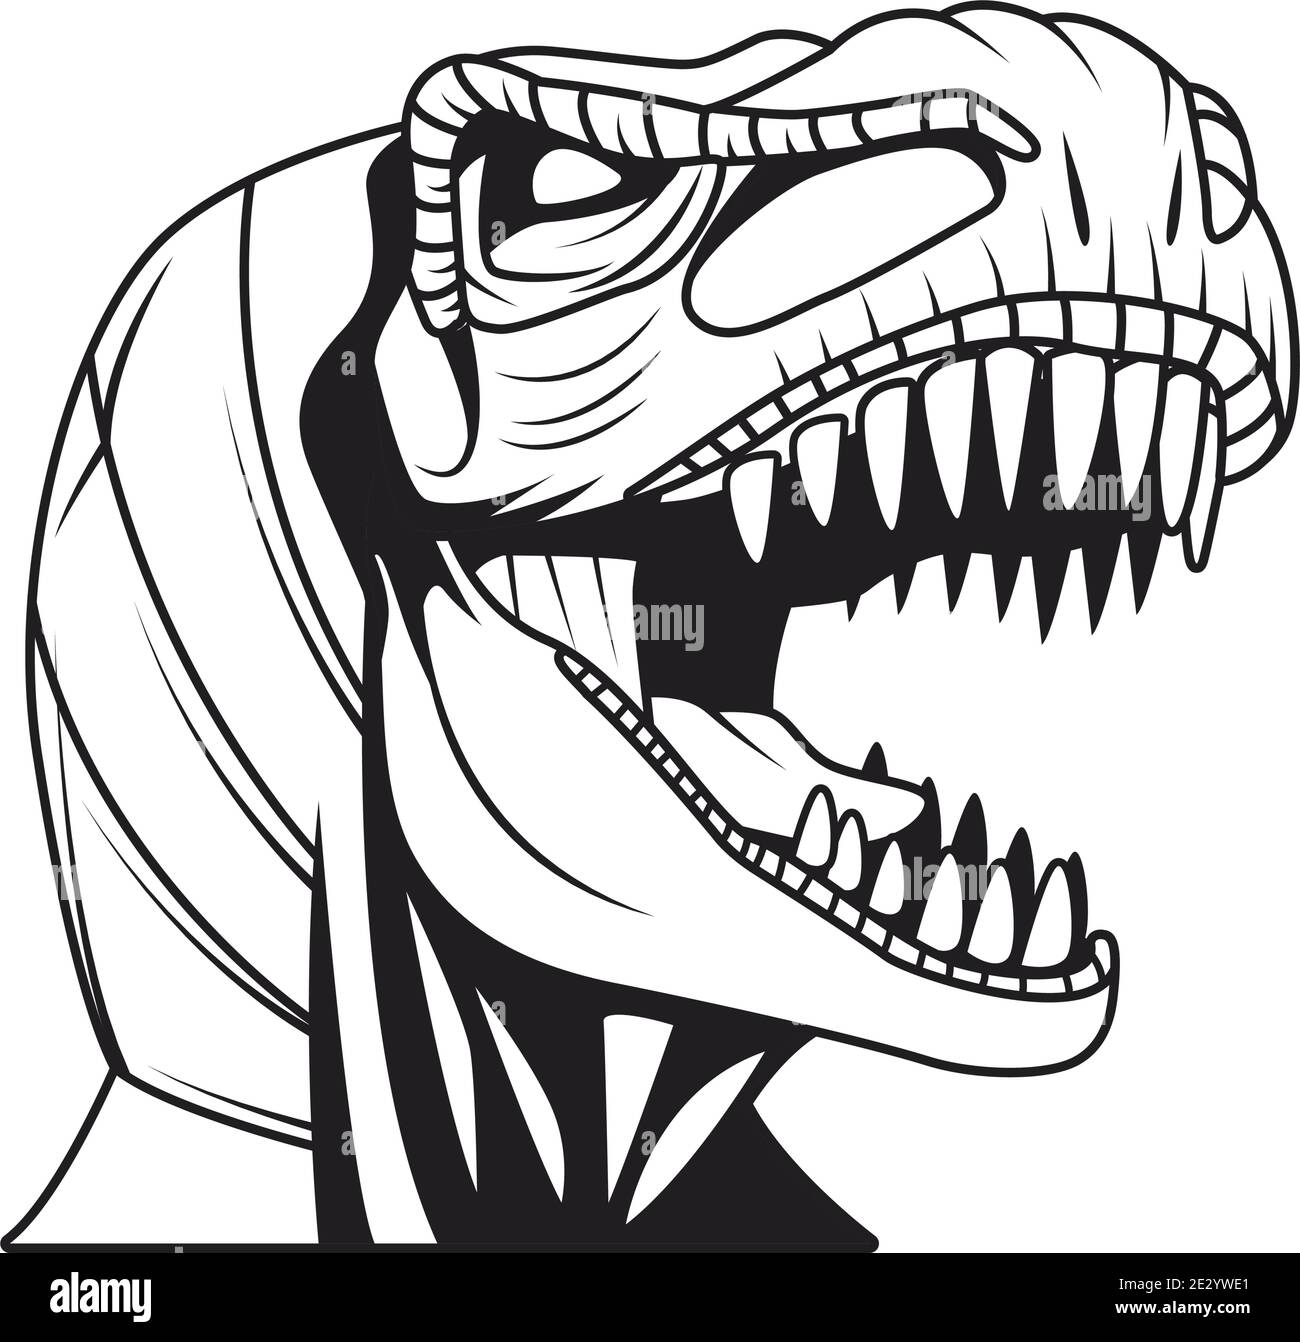 Cara de dinosaurio Imágenes recortadas de stock - Página 3 - Alamy